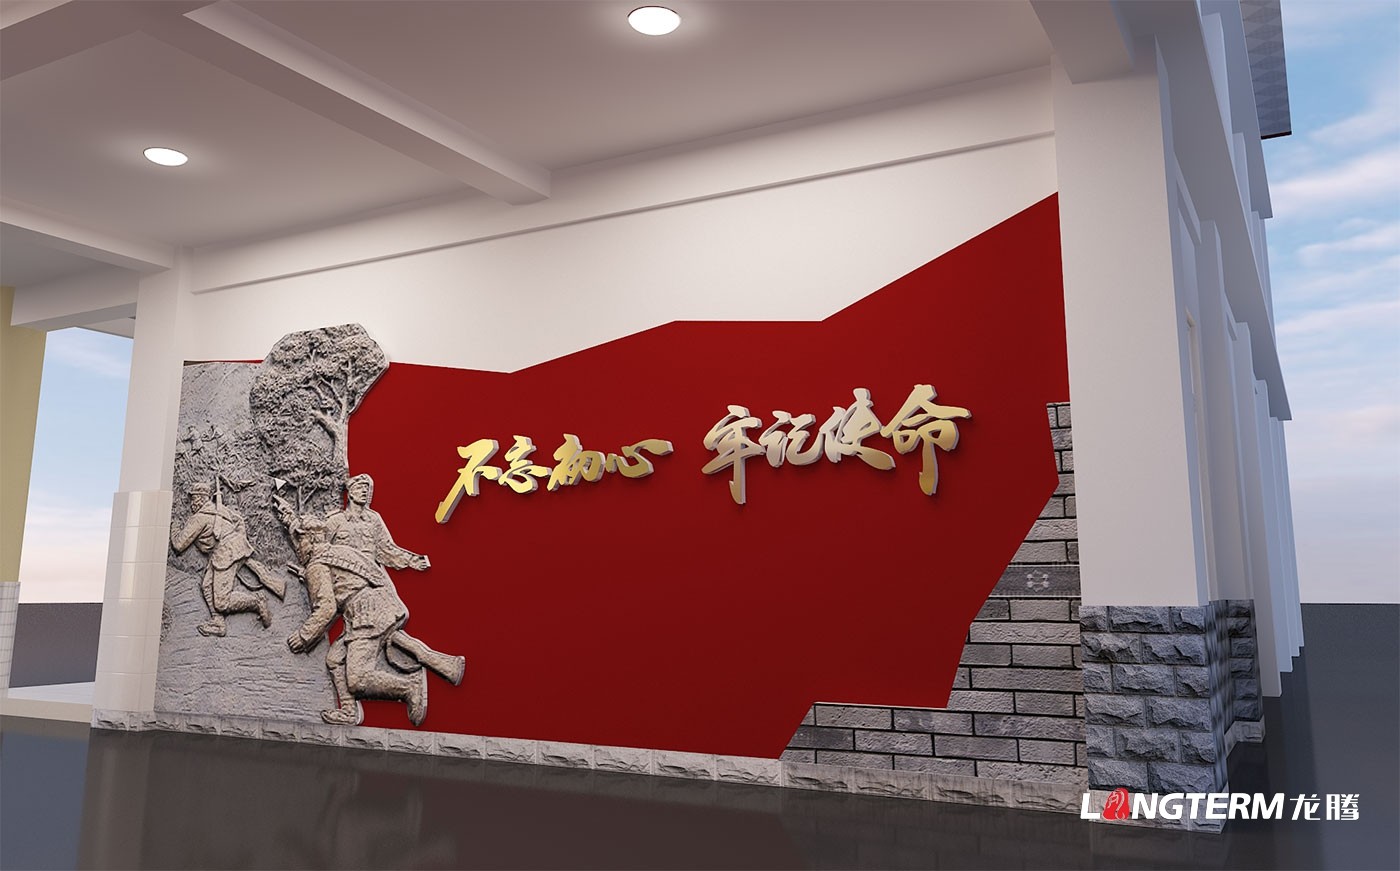 锦江就业局党政红色文化上墙设计_廉政广场文化氛围营造_党建文化活动创意设计